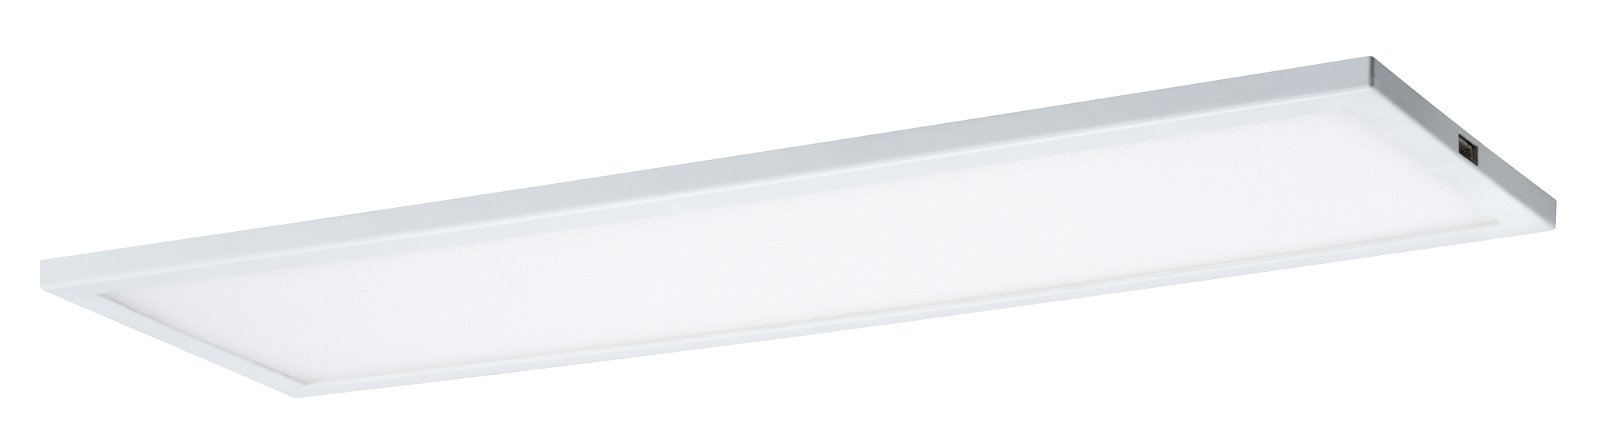 LED-onderkastverlichting Ace 300x7mm 520lm 2700K Wit/Satijn dimbaar